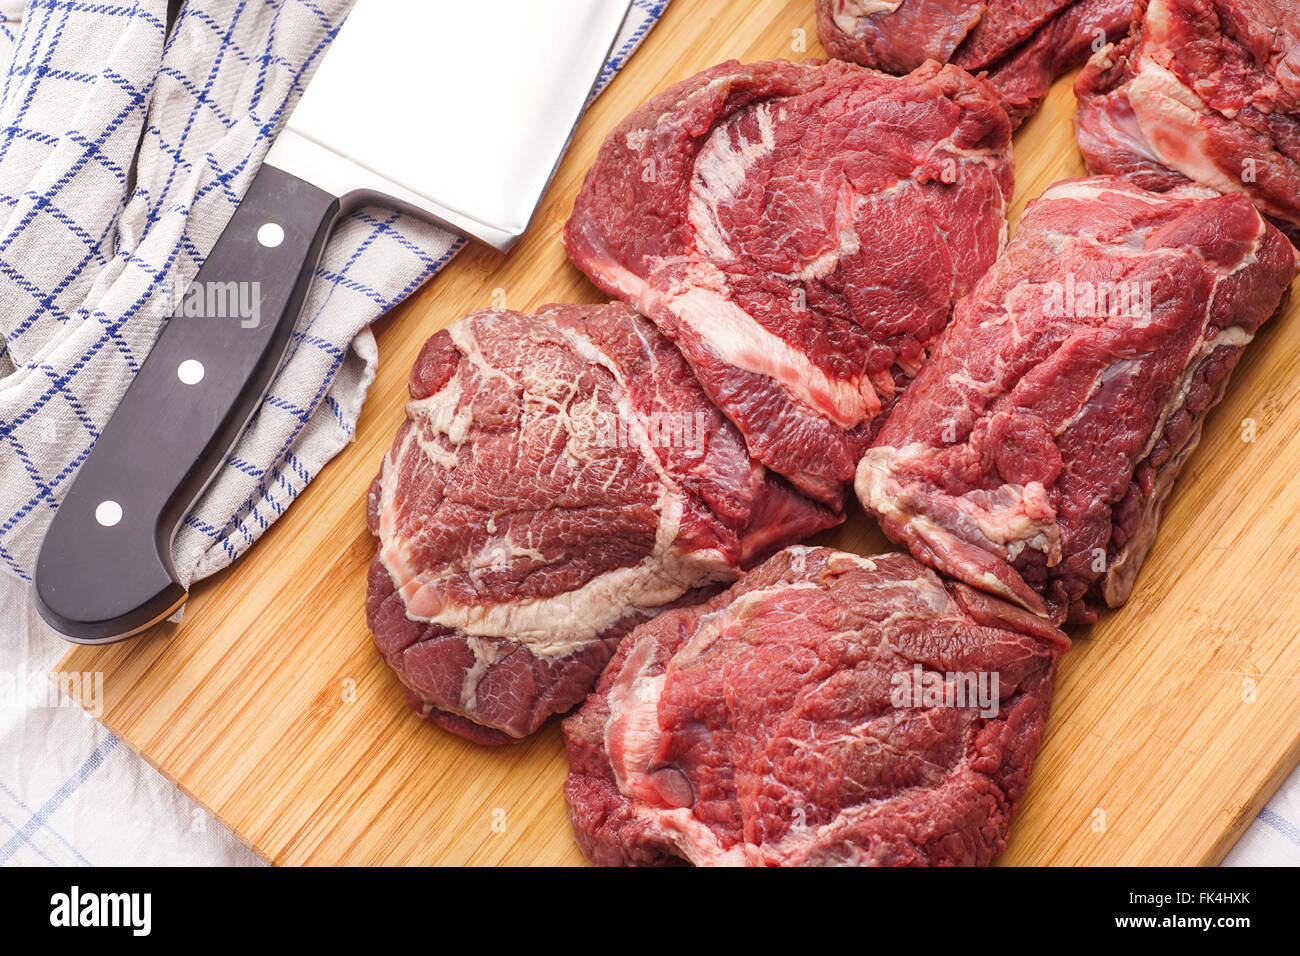 rohes Fleisch, leckeres Kalbfleisch, Rindfleisch Wangen - Bestes Fleisch für geschmackvolle Gourmet-langsames Kochen Stockfoto